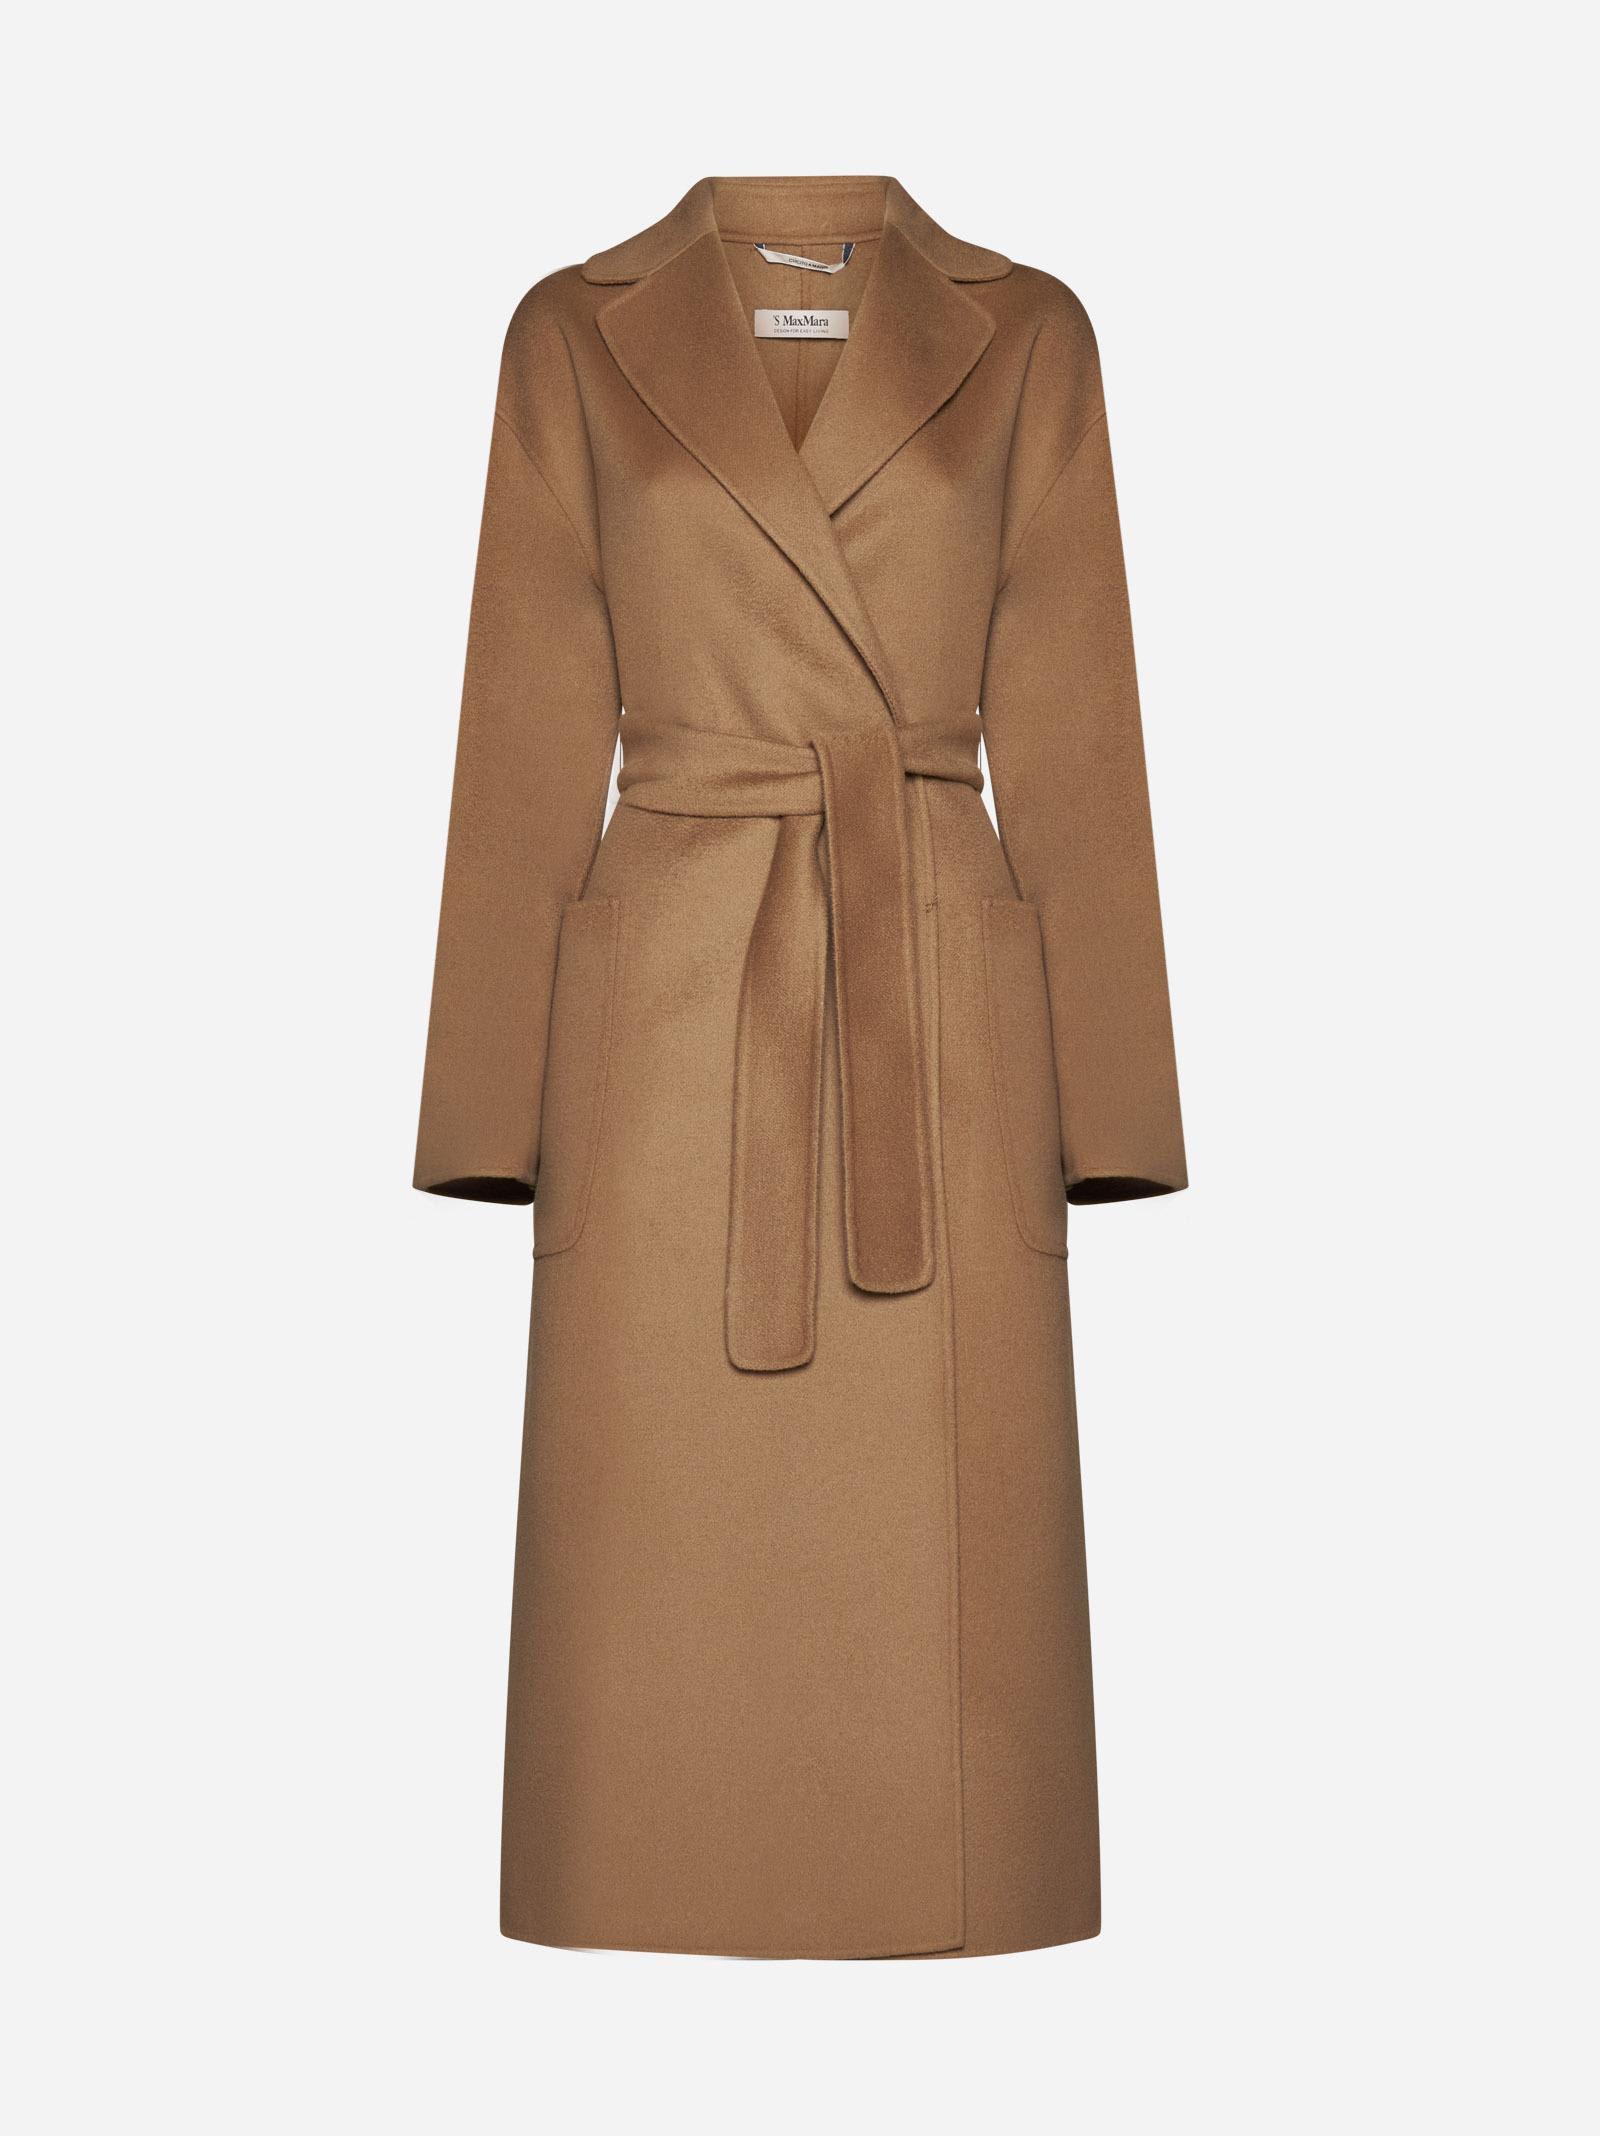 【日本限定モデル】 's max coat cashmere & wool mara コート 色・サイズを選択:Brown